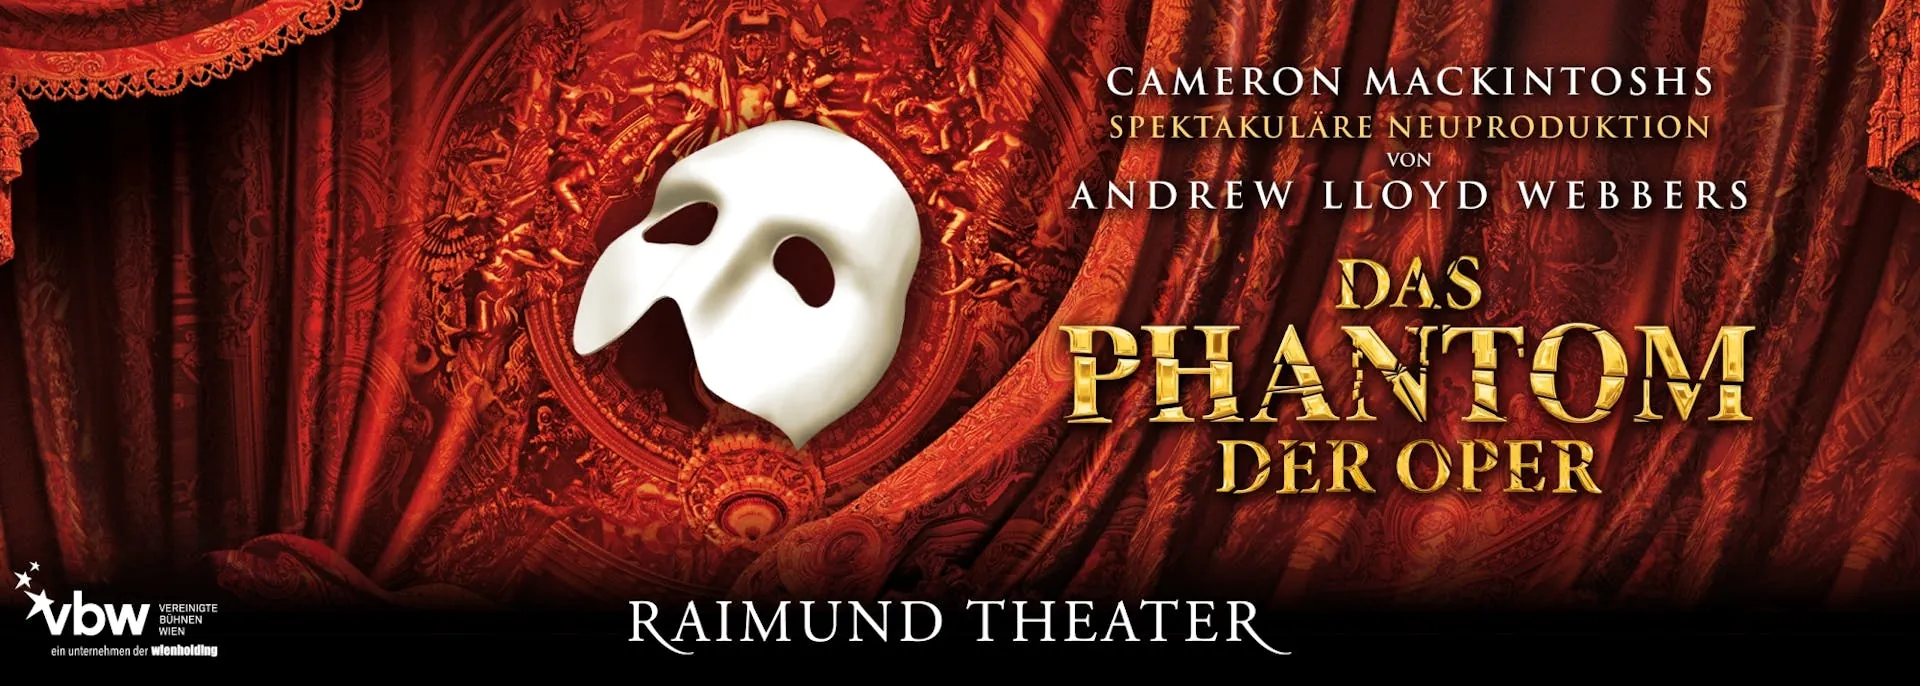 Phantom der Oper Header - weiße Maske auf einem roten Vorhang